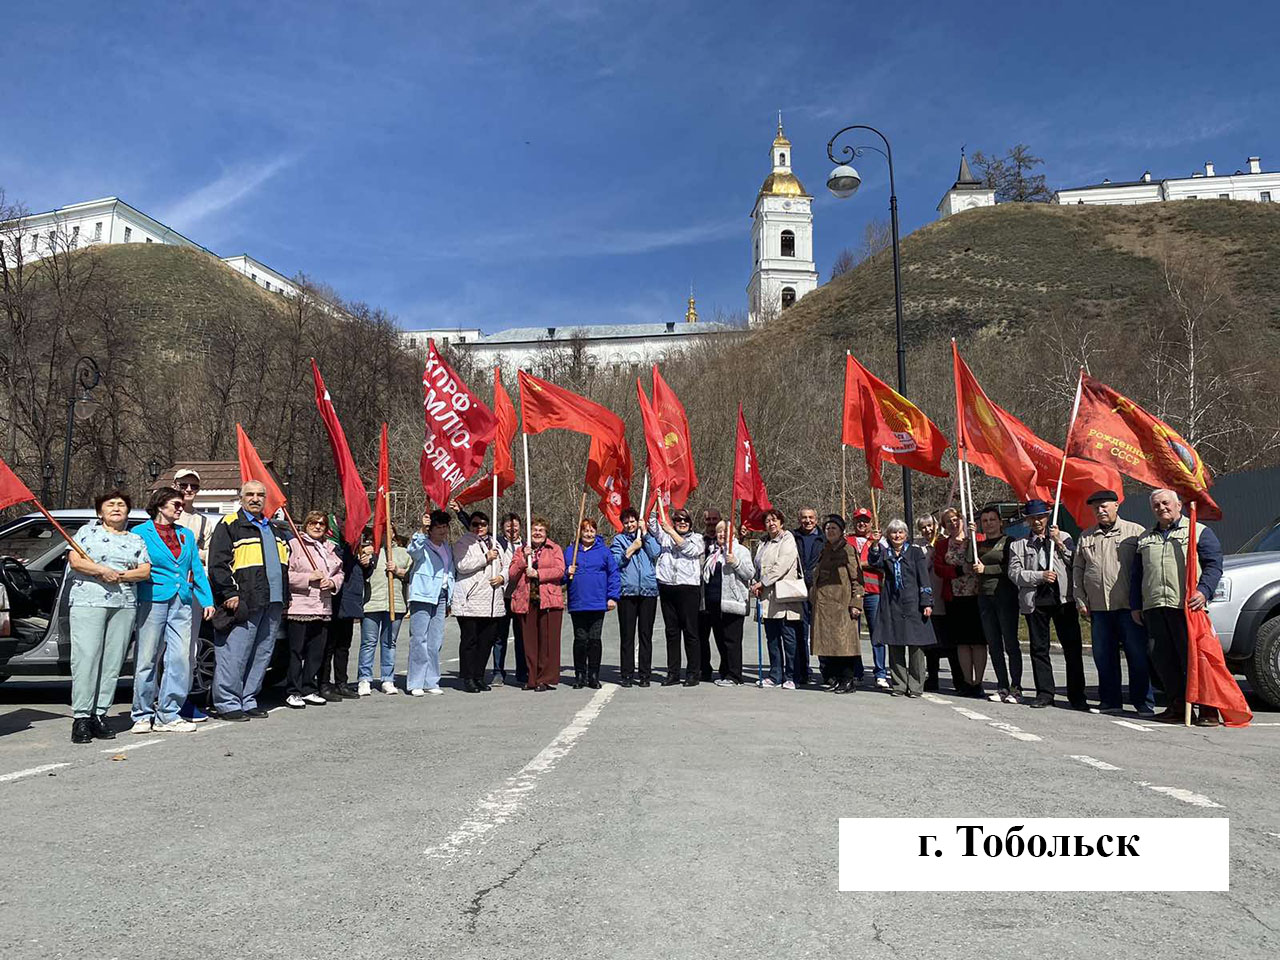 В Тюменской области прошли праздничные мероприятия, посвящённые Дню рождения В.И. Ленина